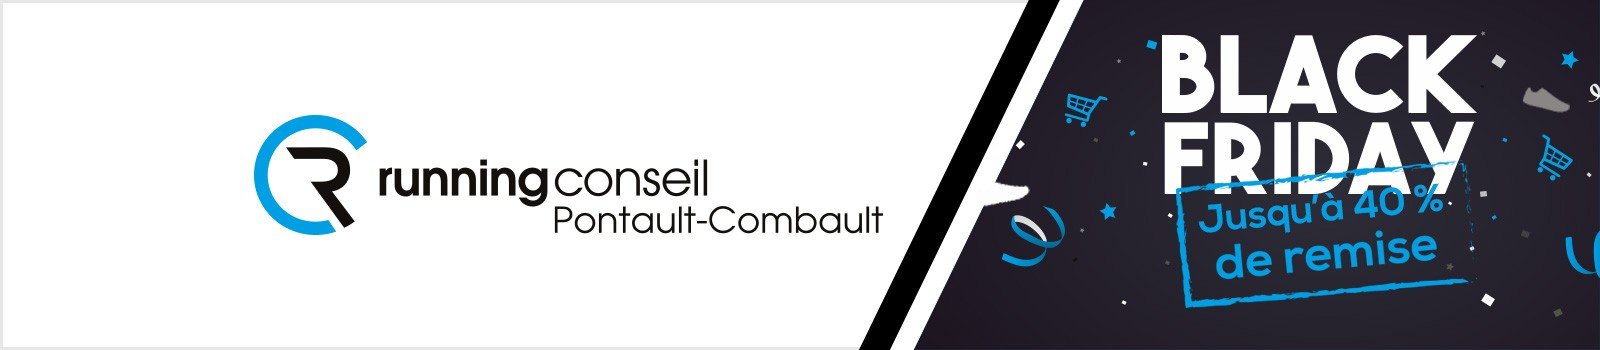 BLACK FRIDAY RUNNING CONSEIL PONTAULT-COMBAULT